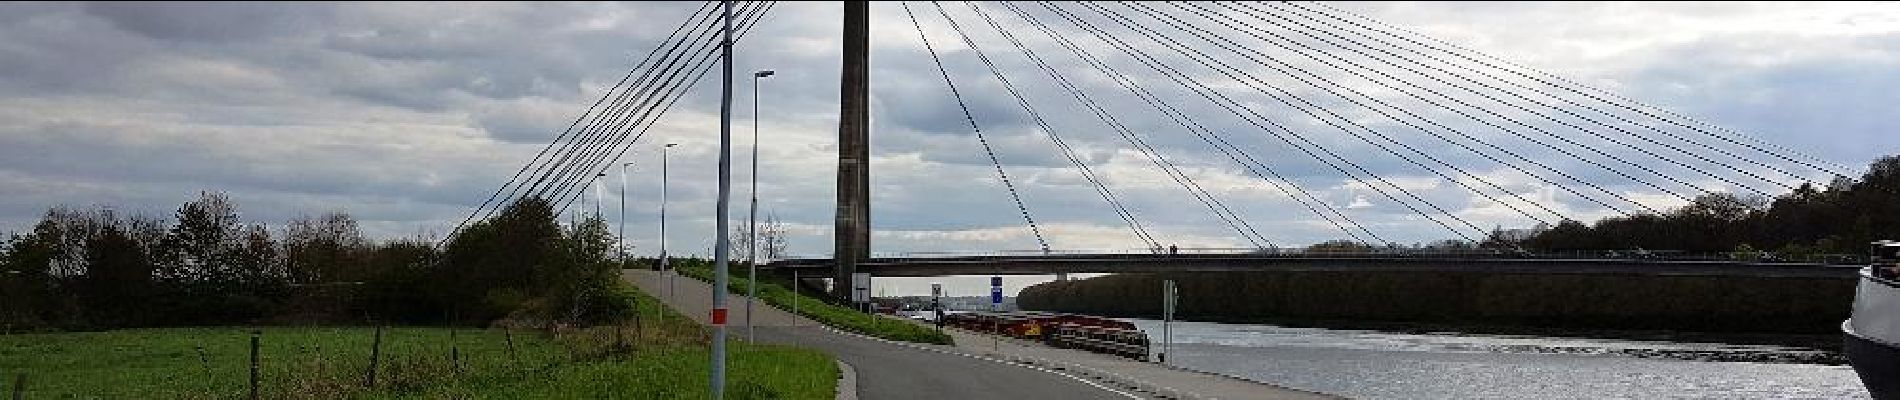 POI Weset - brug over het Albertkanaal - Photo